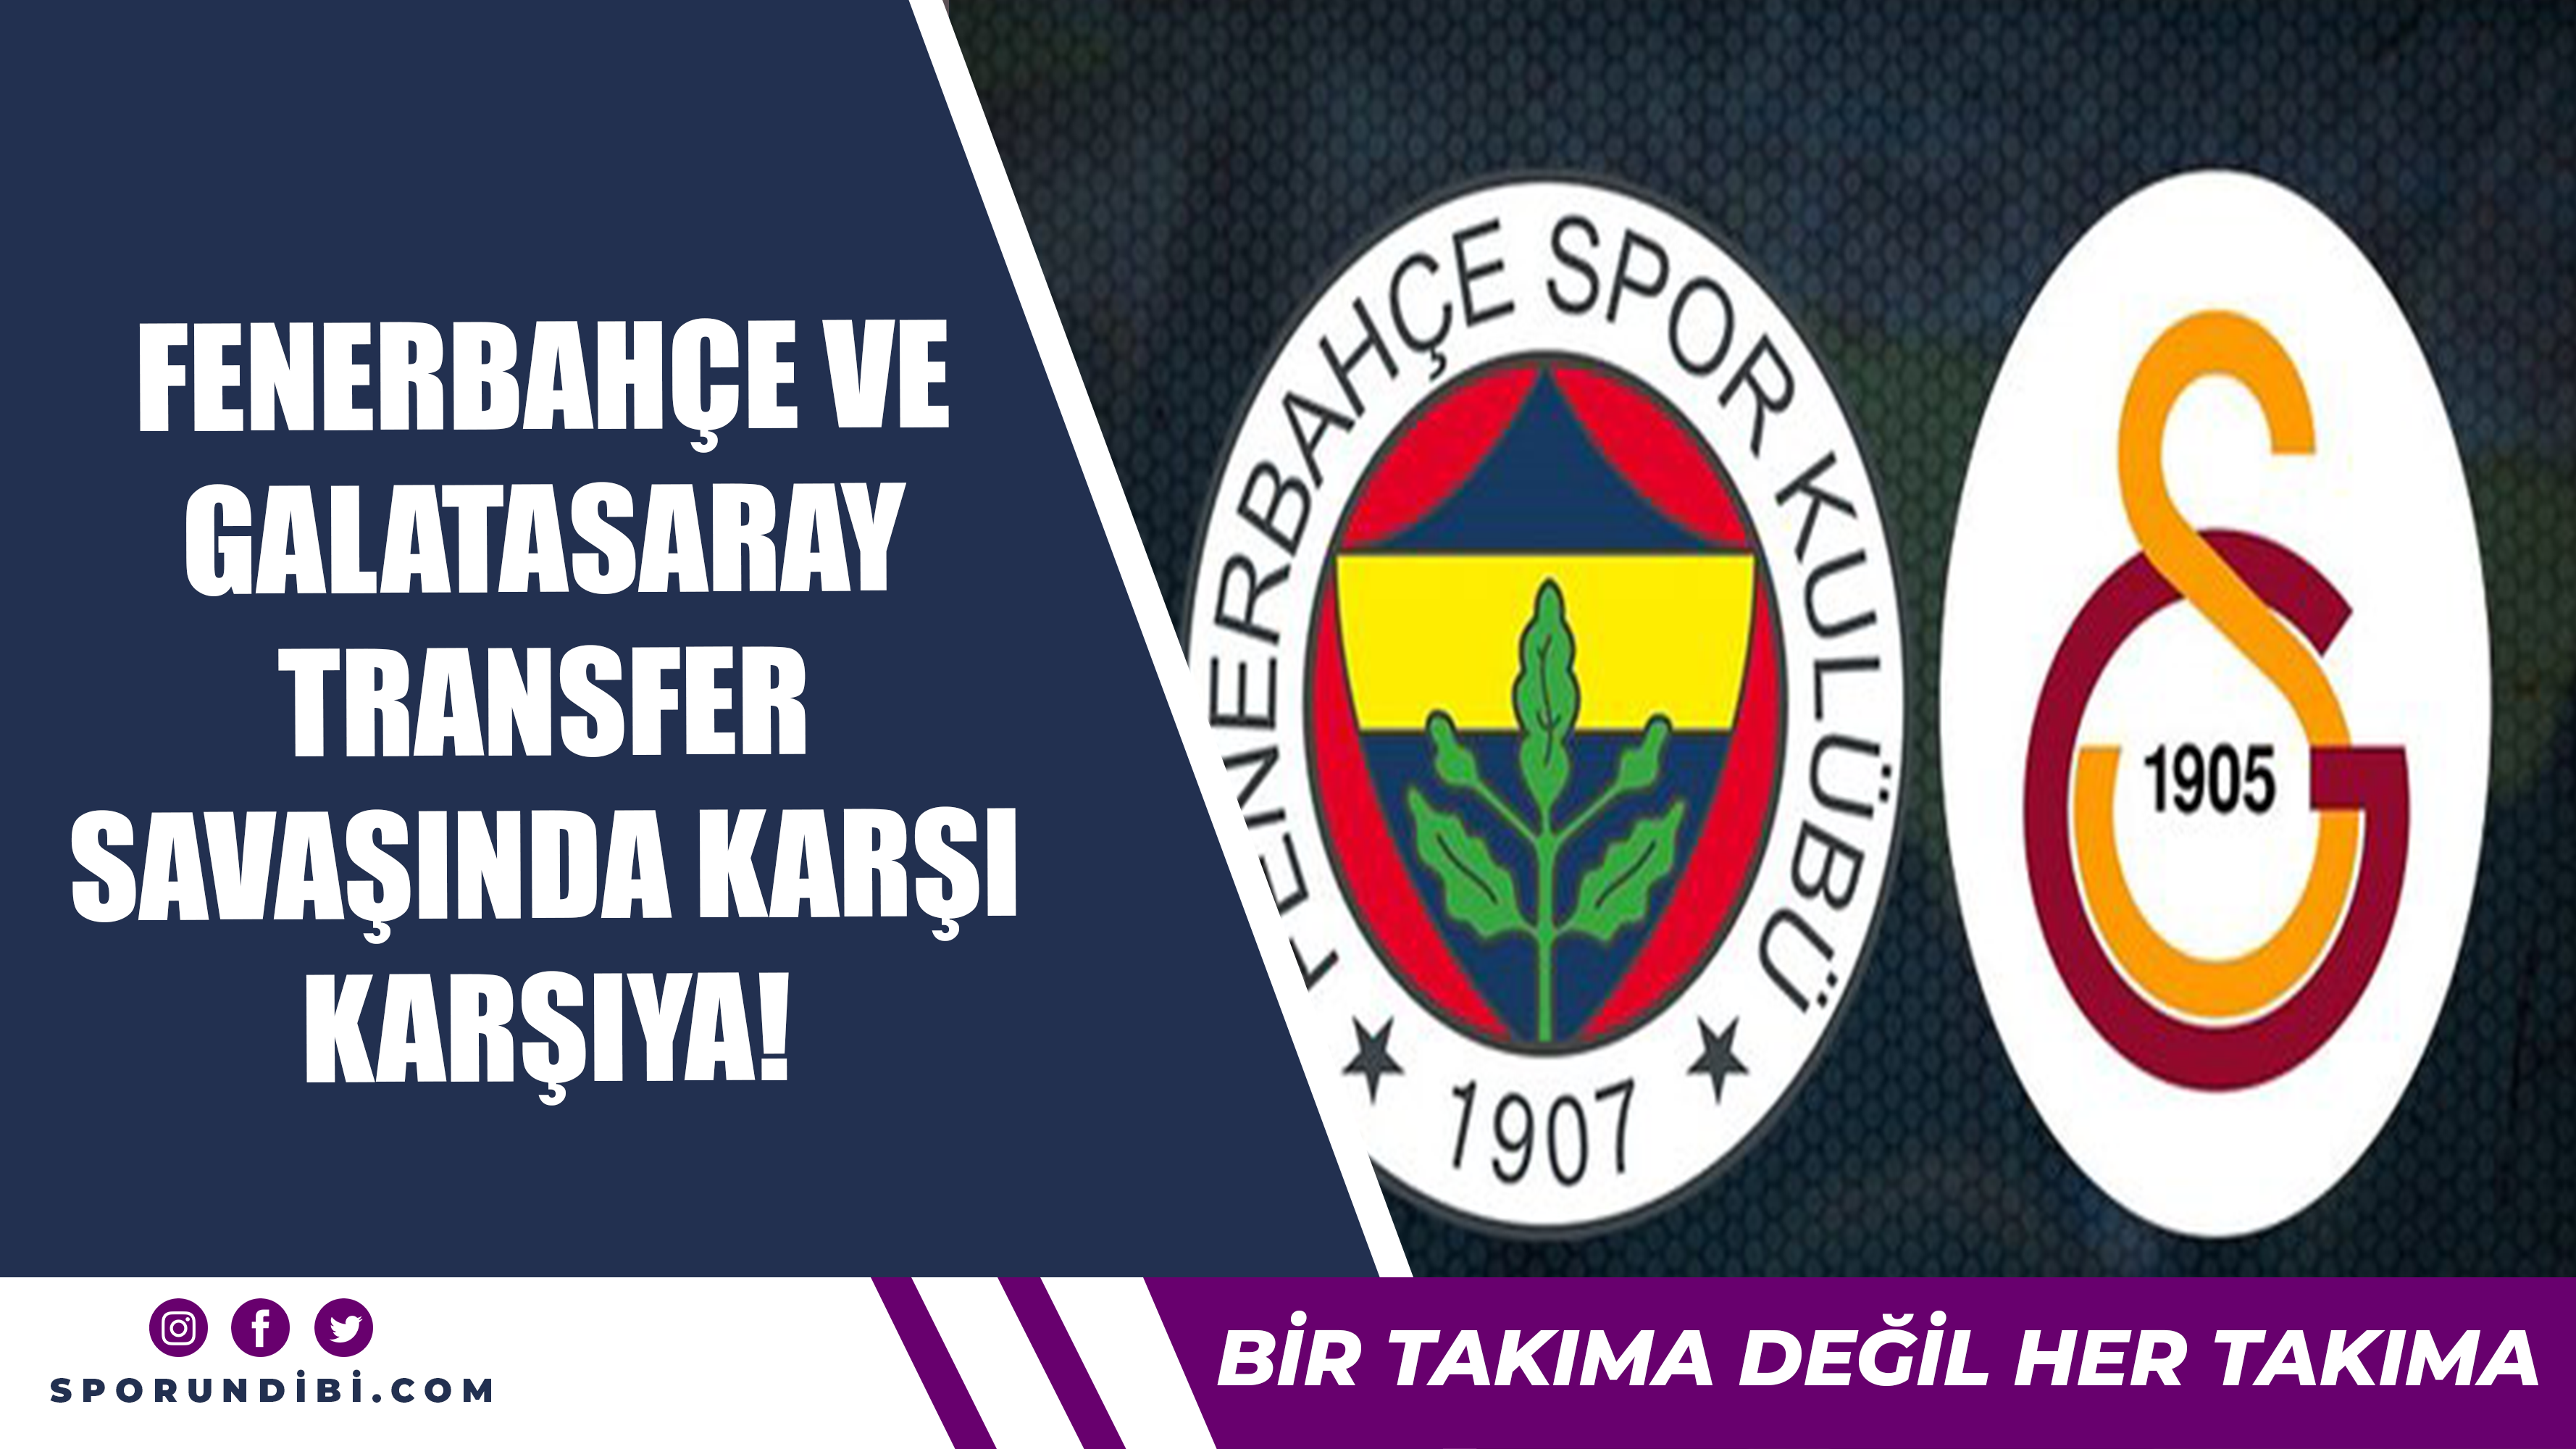 Fenerbahçe ve Galatasaray transfer savaşında karşı karşıya!